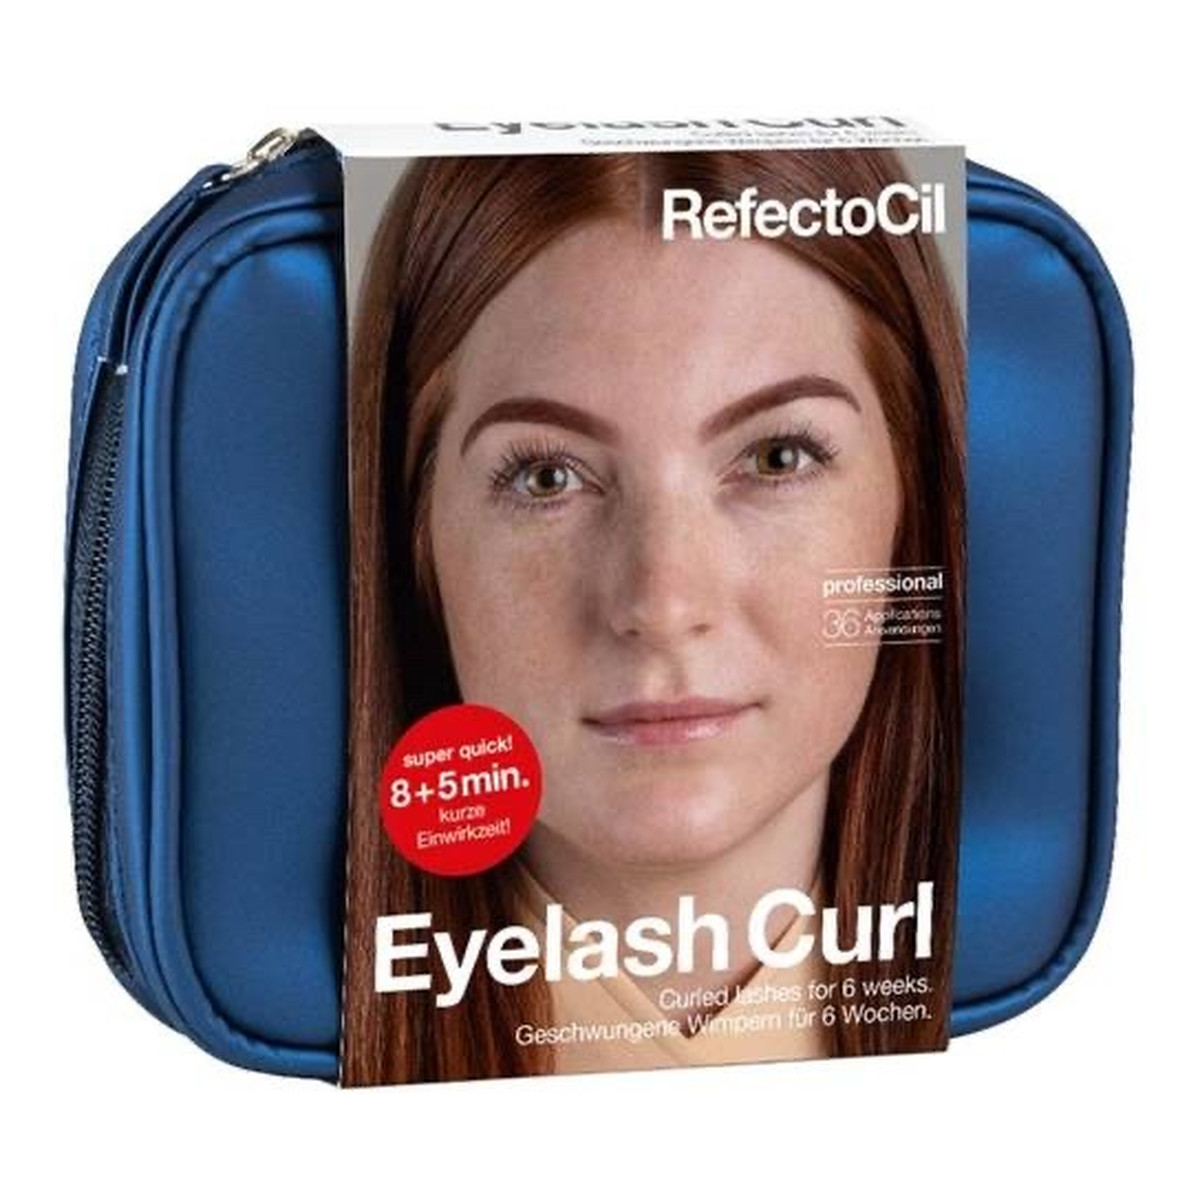 RefectoCil Eyelash Curl 36 Zestaw do trwałego podkręcania rzęs 18 aplikacji